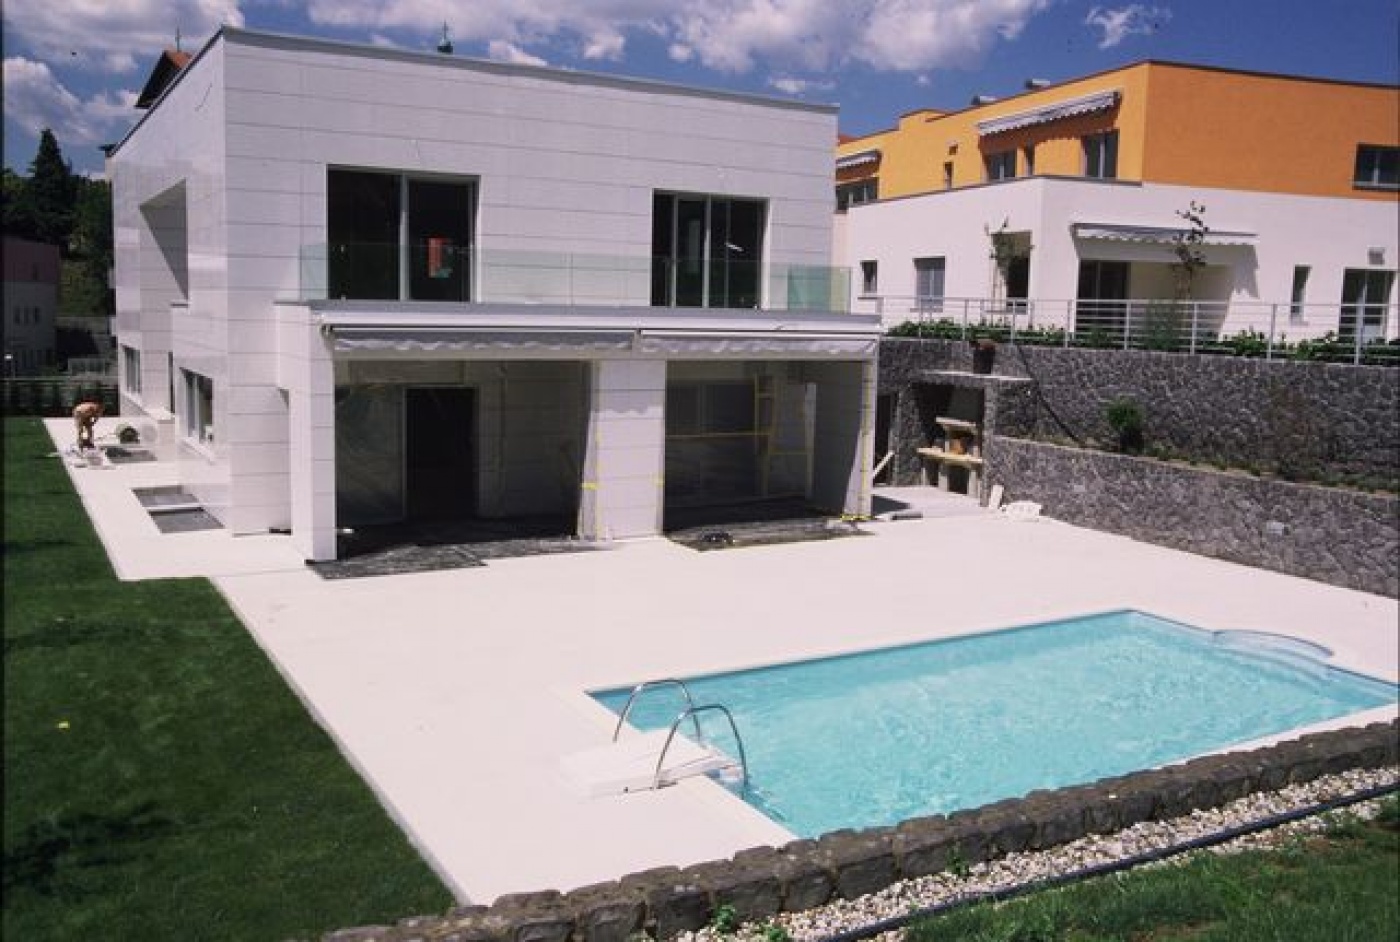 Semi-précieux Fabrication de revetement de façade sur mesure en composite quartz Blanco Paloma 